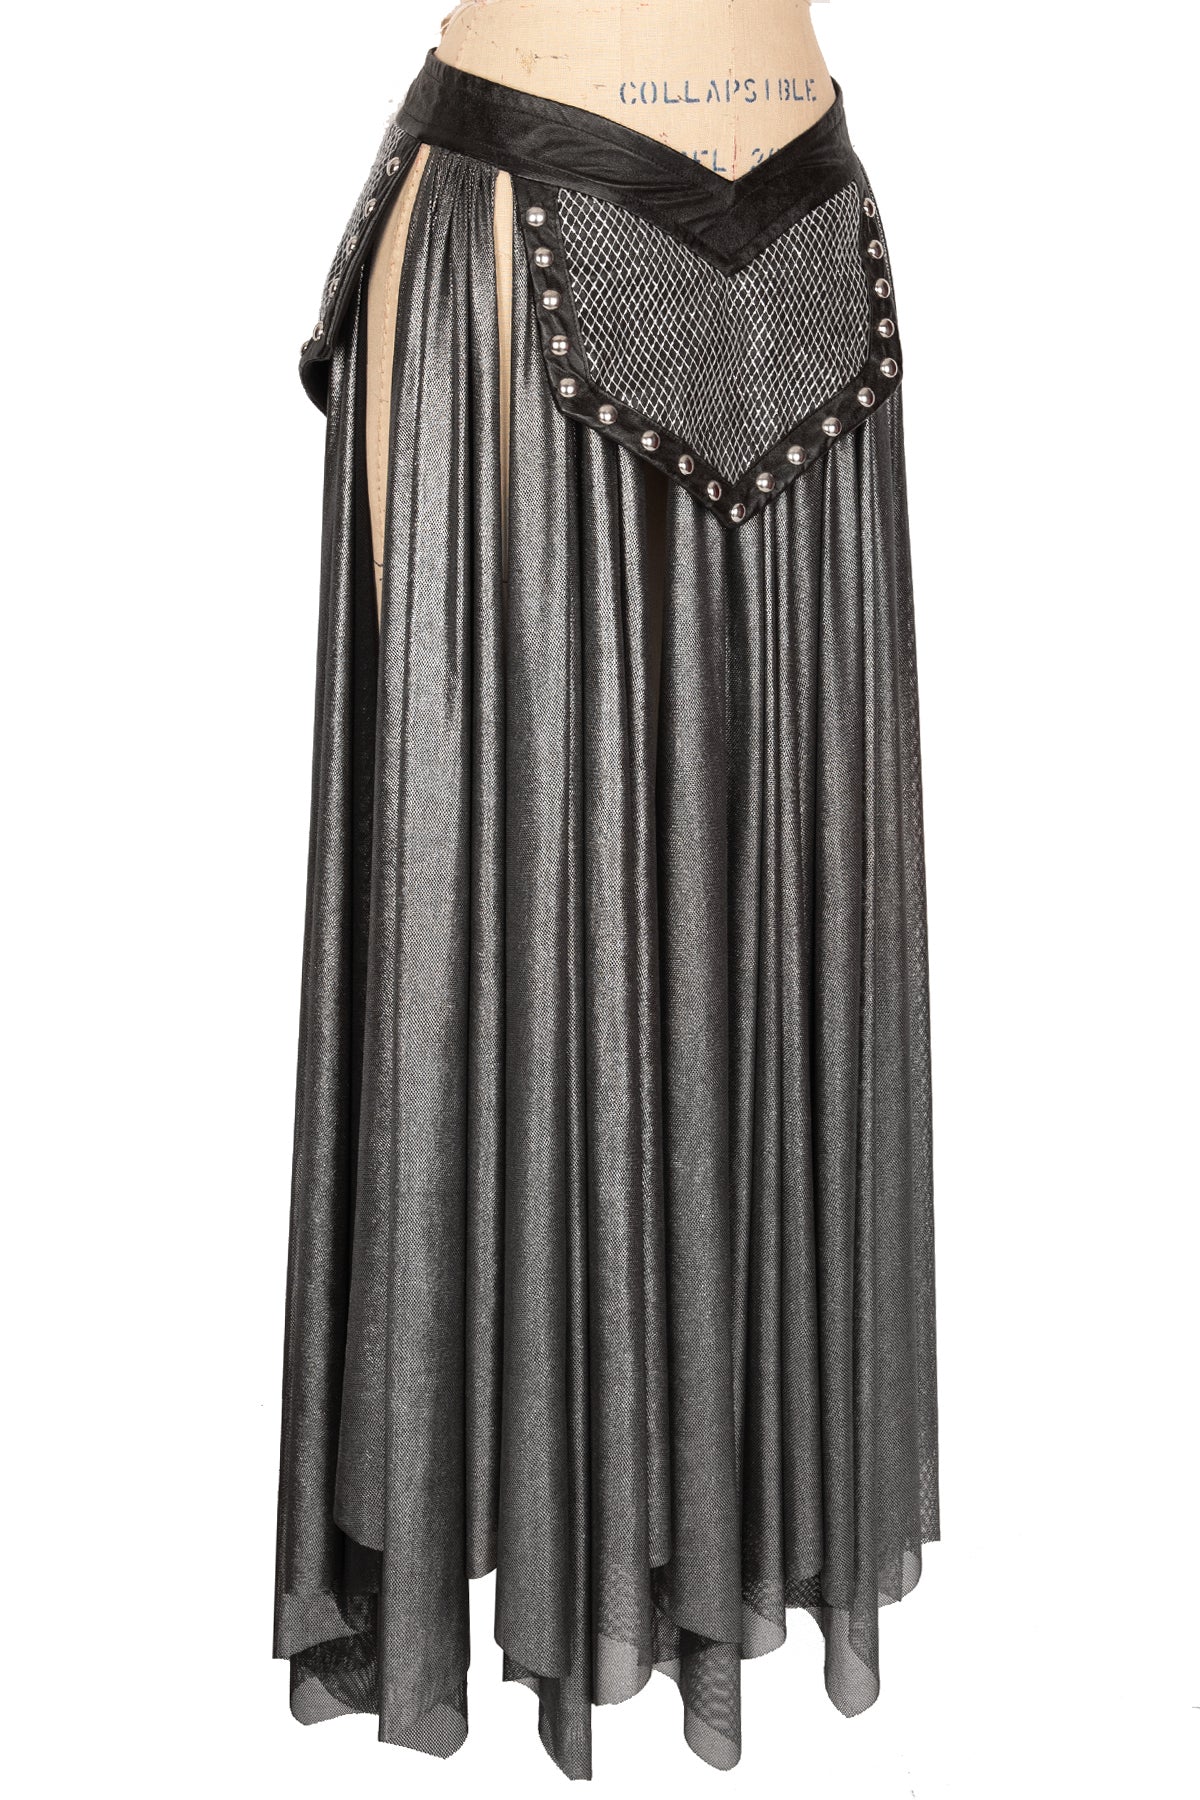 Joan of Arc V Skirt (for Corset)